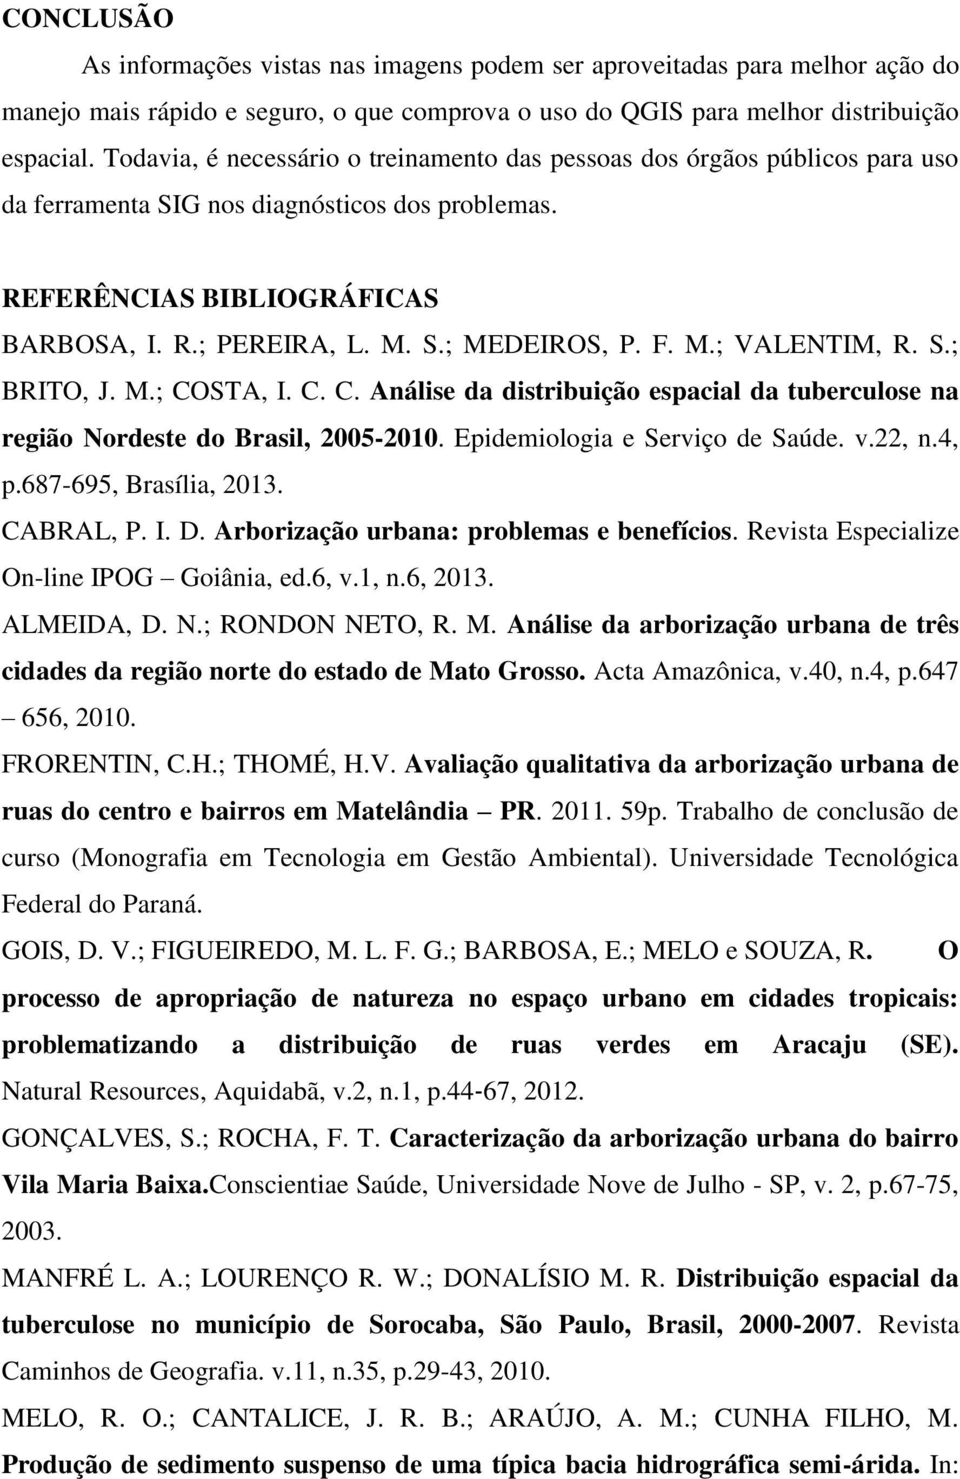 F. M.; VALENTIM, R. S.; BRITO, J. M.; COSTA, I. C. C. Análise da distribuição espacial da tuberculose na região Nordeste do Brasil, 2005-2010. Epidemiologia e Serviço de Saúde. v.22, n.4, p.